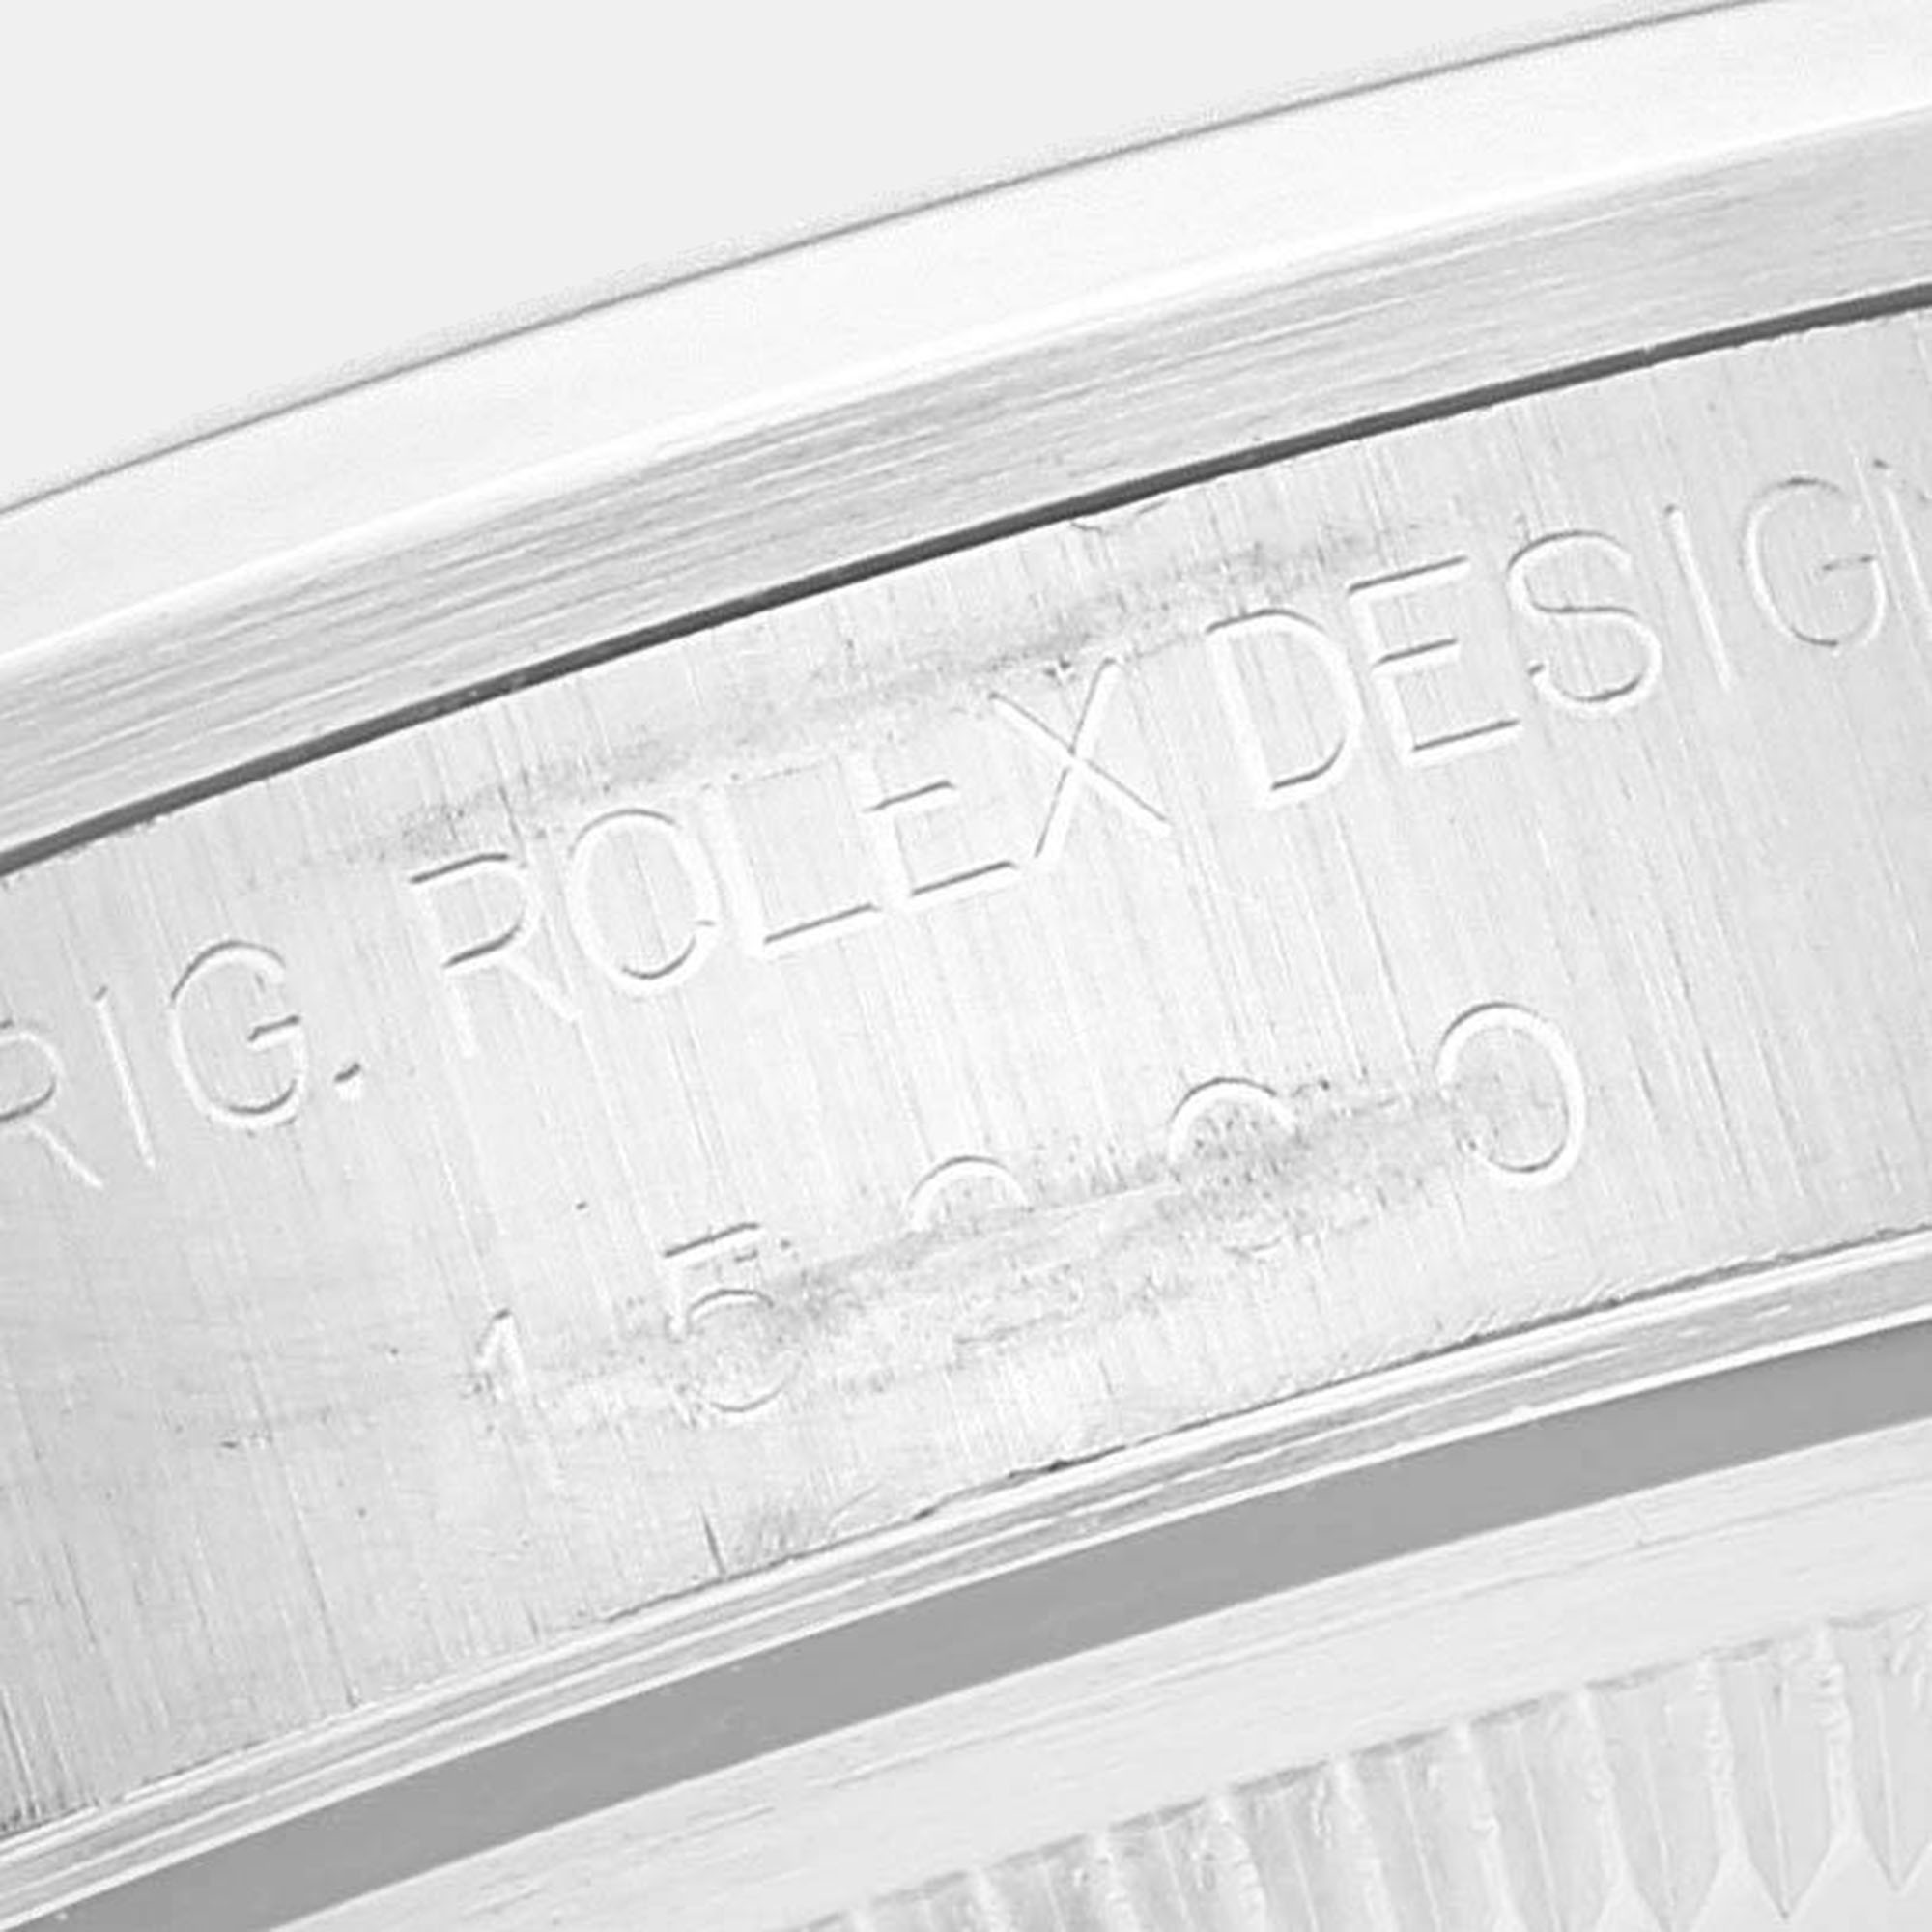 Rolex Date White Dial Oyster Bracelet Steel Men's Watch 15200 34 Mm